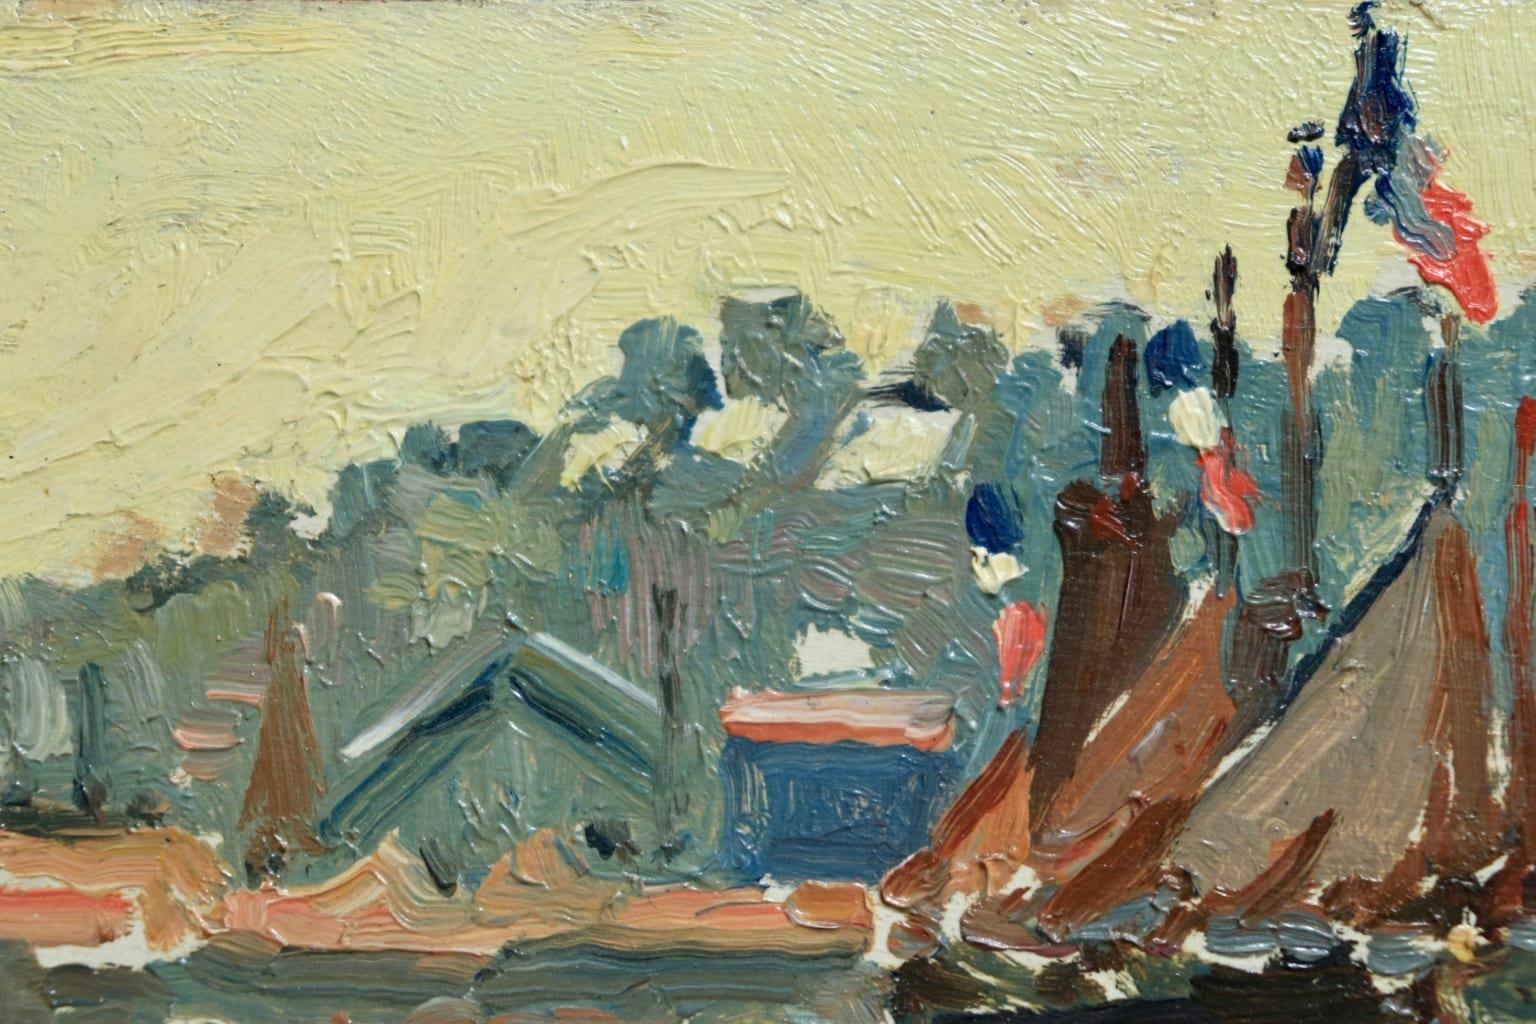 Honfleur - Post Impressionist Oil, Boats in Seascape by Henri de Saint-Delis - Post-Impressionist Painting by Henri Liénard de Saint-Délis